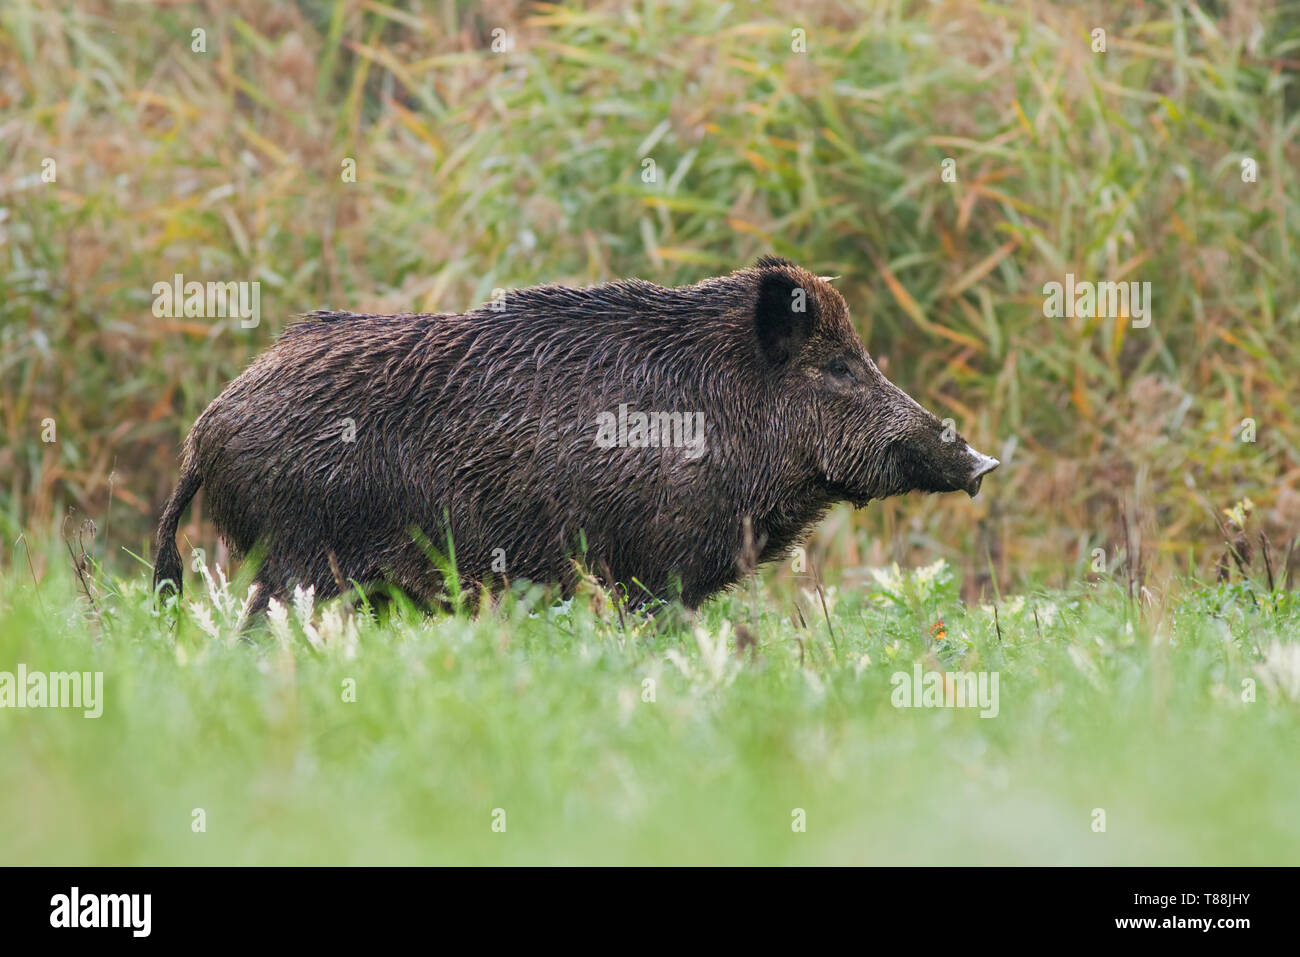 Seitenansicht der erwachsenen Wildschwein, sus scrofa, stehend auf einer Wiese im grünen Gras im Sommer mit unscharfem Hintergrund. Low Angle View des wilden Tieres in der Natu Stockfoto